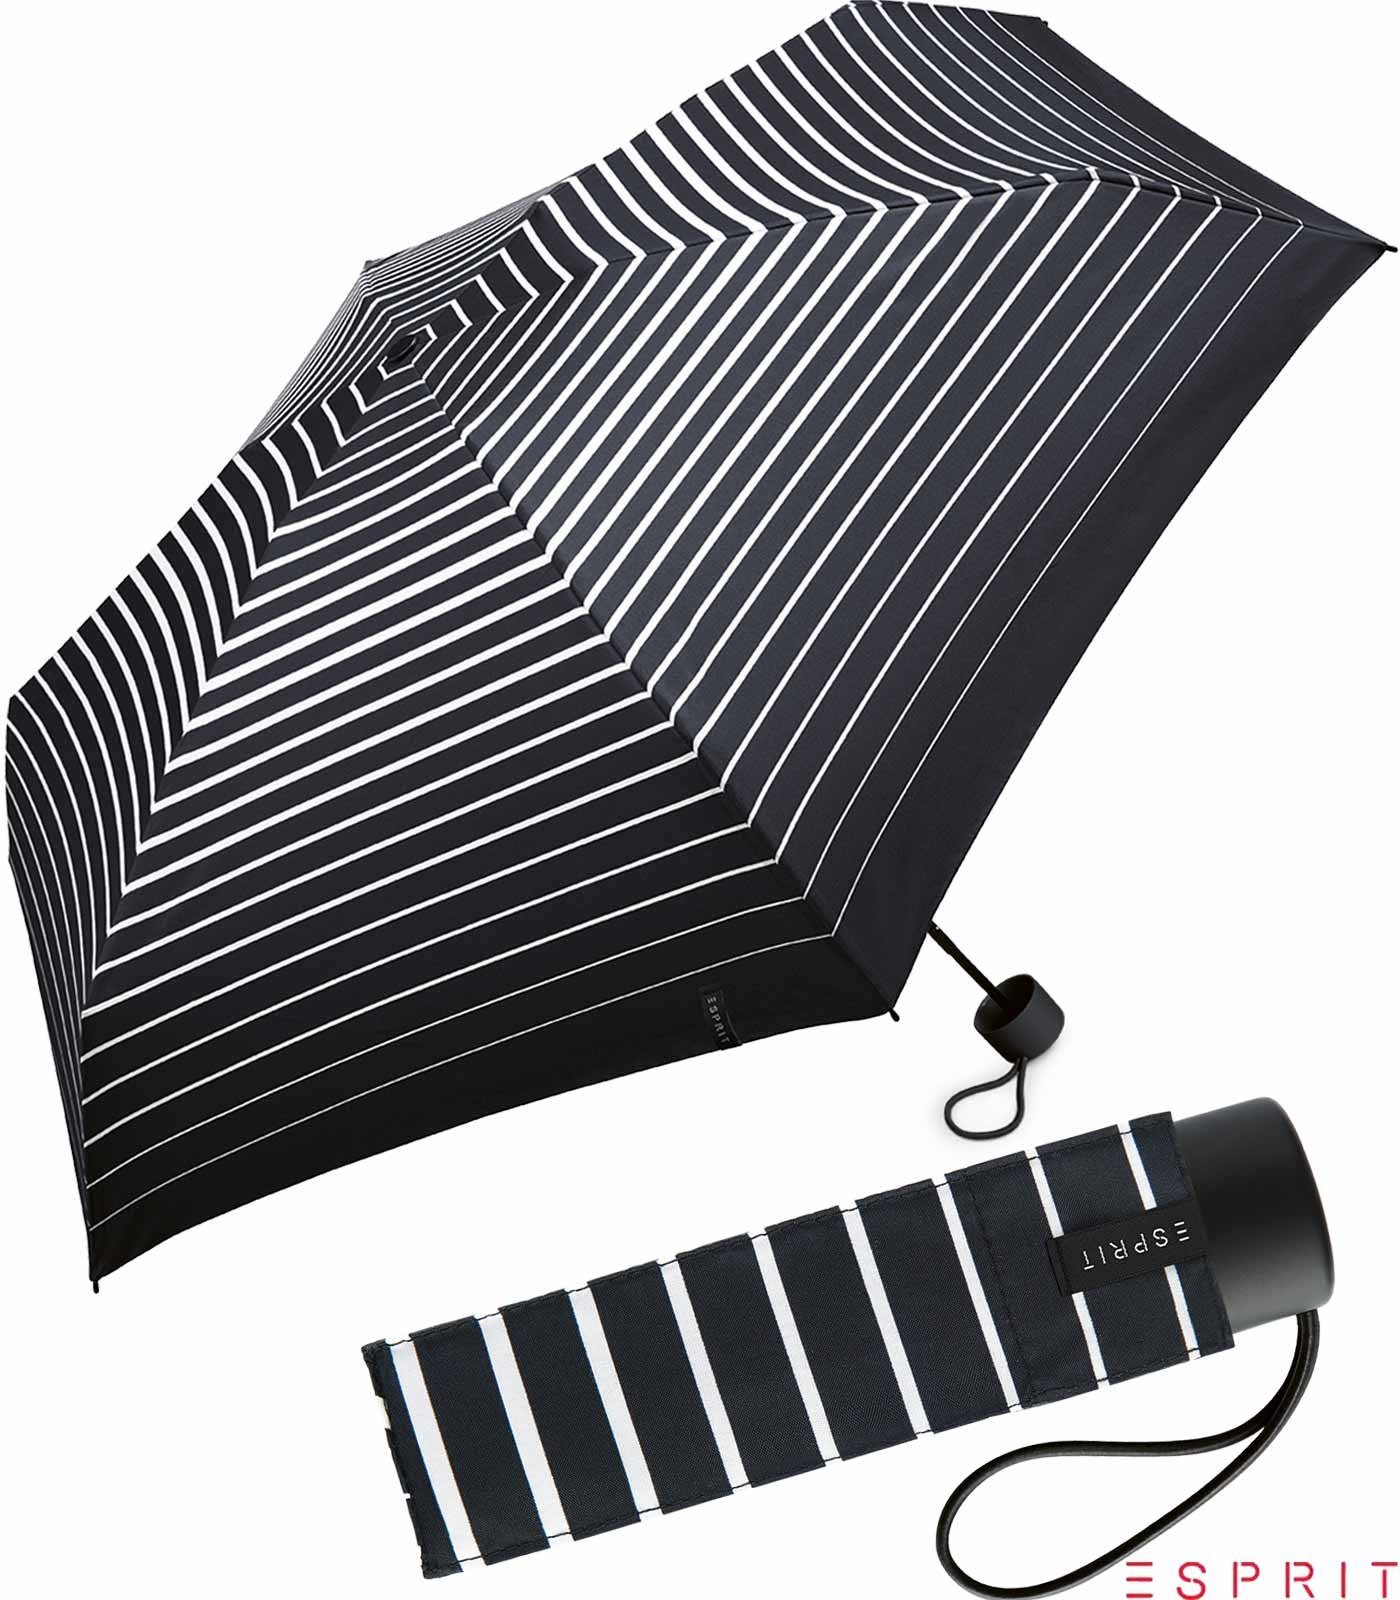 Esprit Taschenregenschirm Damen Super Mini Petito - Degradee Stripe - black, winzig klein, in moderner Streifen-Optik schwarz-weiß